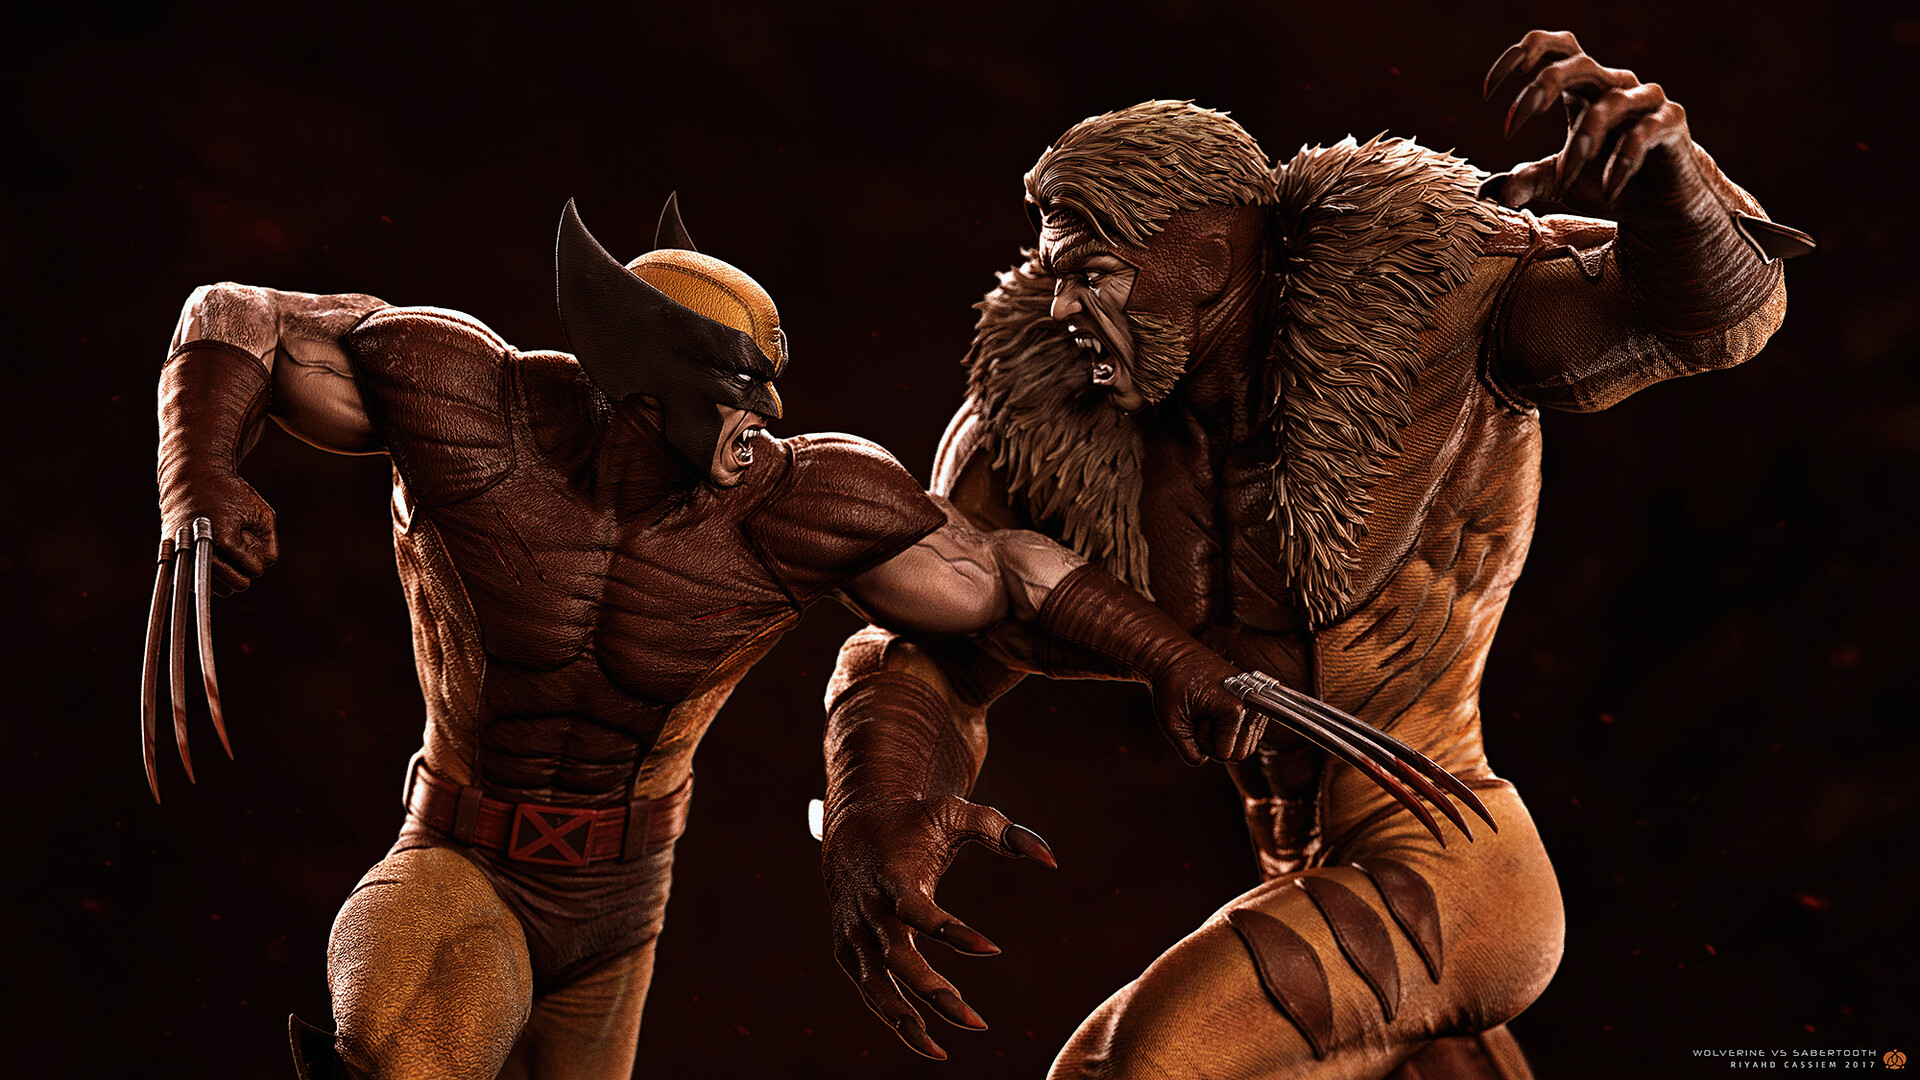 Wolverine vs Sabretooth, Riyahd Cassiem